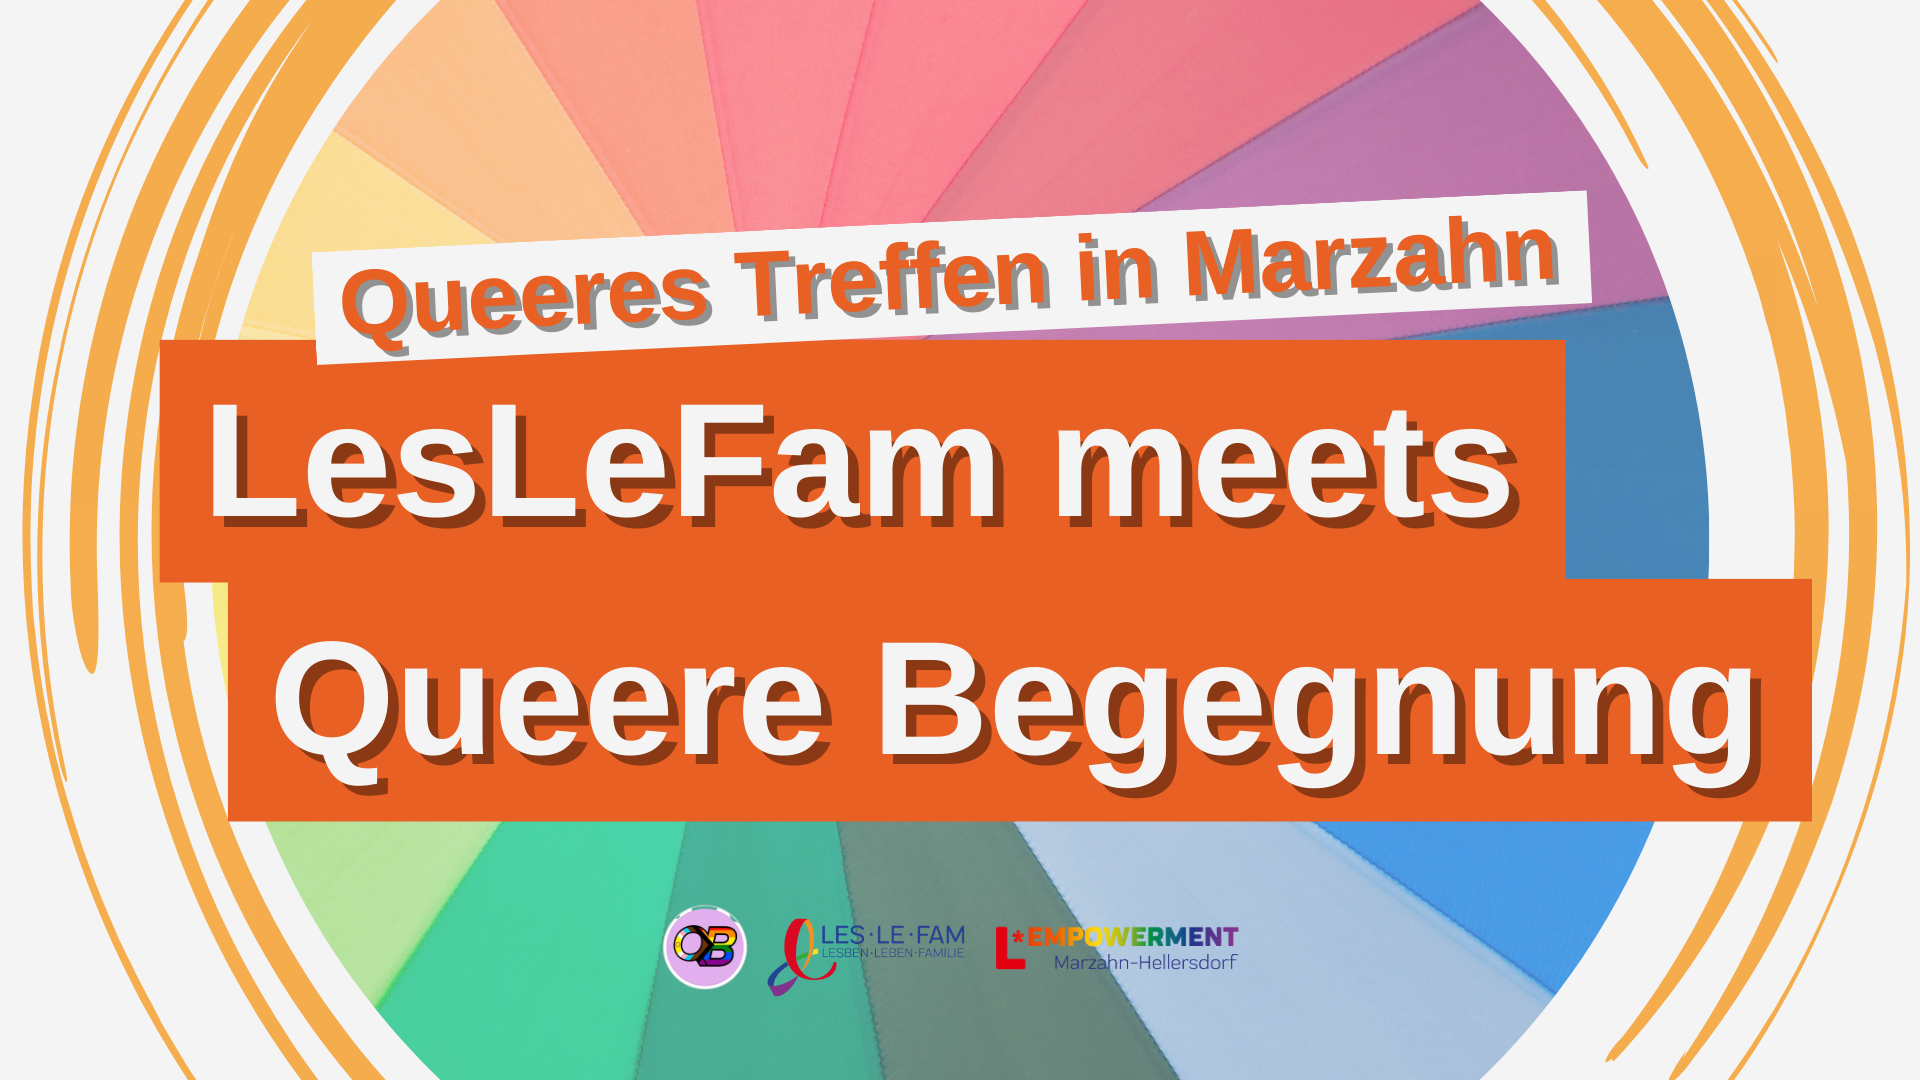 Queeres Treffen in Marzahn: LesLeFam meets Queere Begegnung